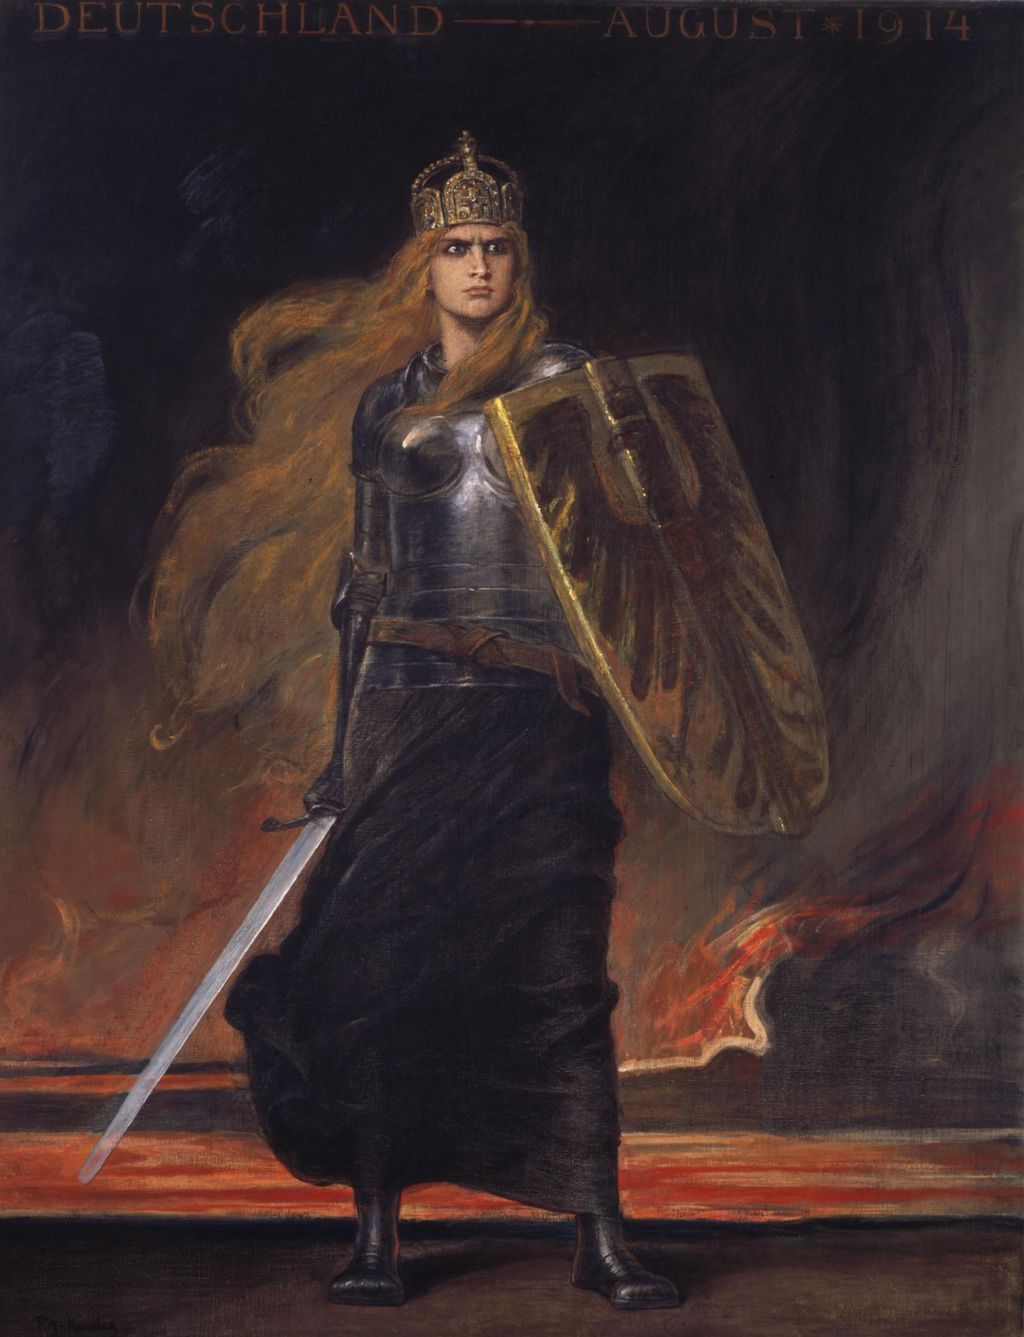 Gemälde: Friedrich August von Kaulbach, "Germania", 1914